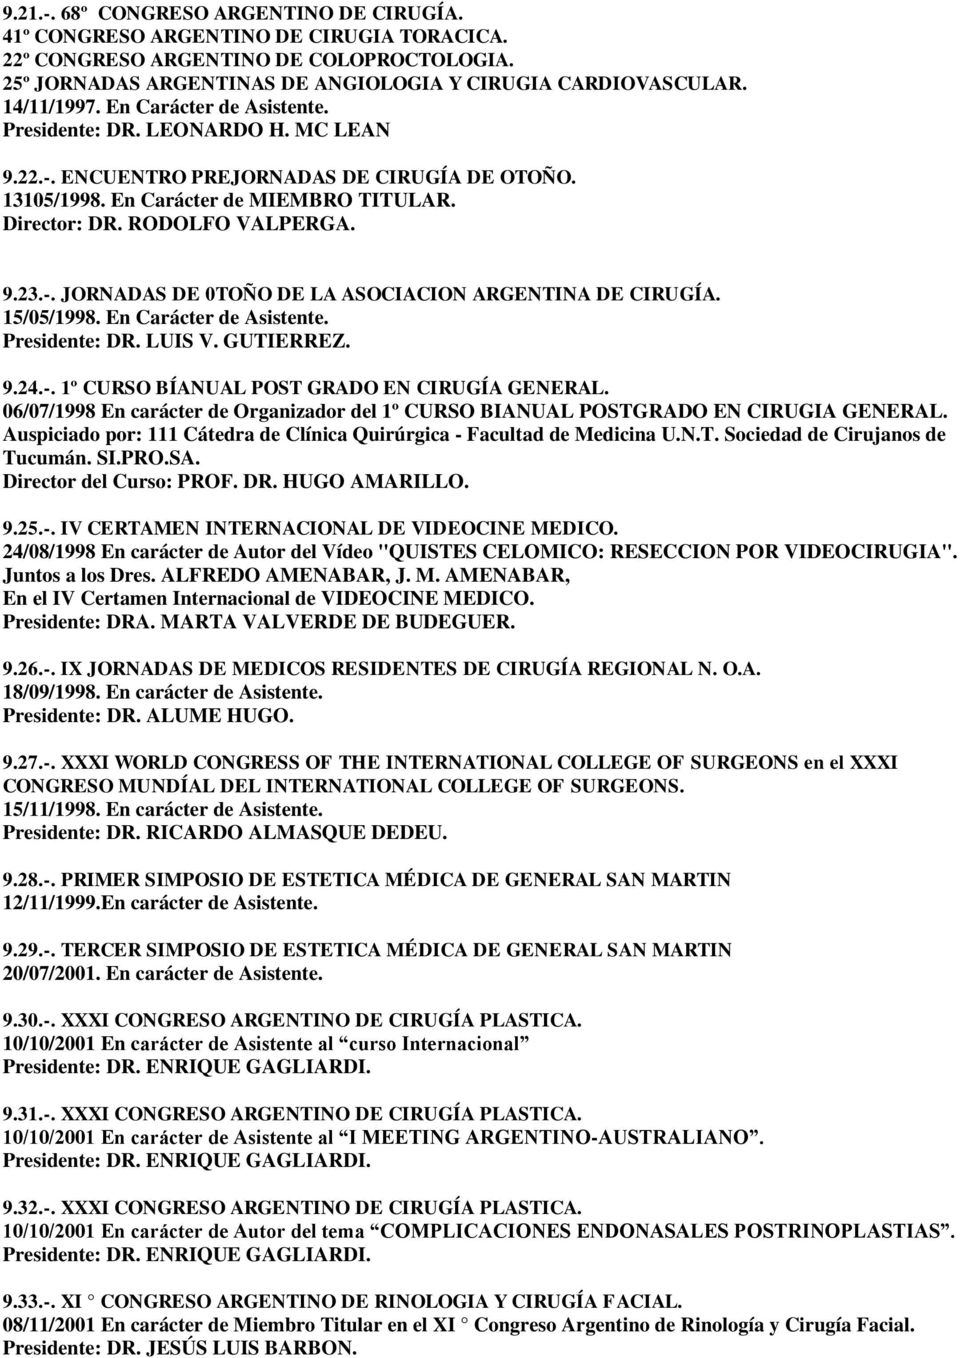 9.23.-. JORNADAS DE 0TOÑO DE LA ASOCIACION ARGENTINA DE CIRUGÍA. 15/05/1998. En Carácter de Asistente. Presidente: DR. LUIS V. GUTIERREZ. 9.24.-. 1º CURSO BÍANUAL POST GRADO EN CIRUGÍA GENERAL.